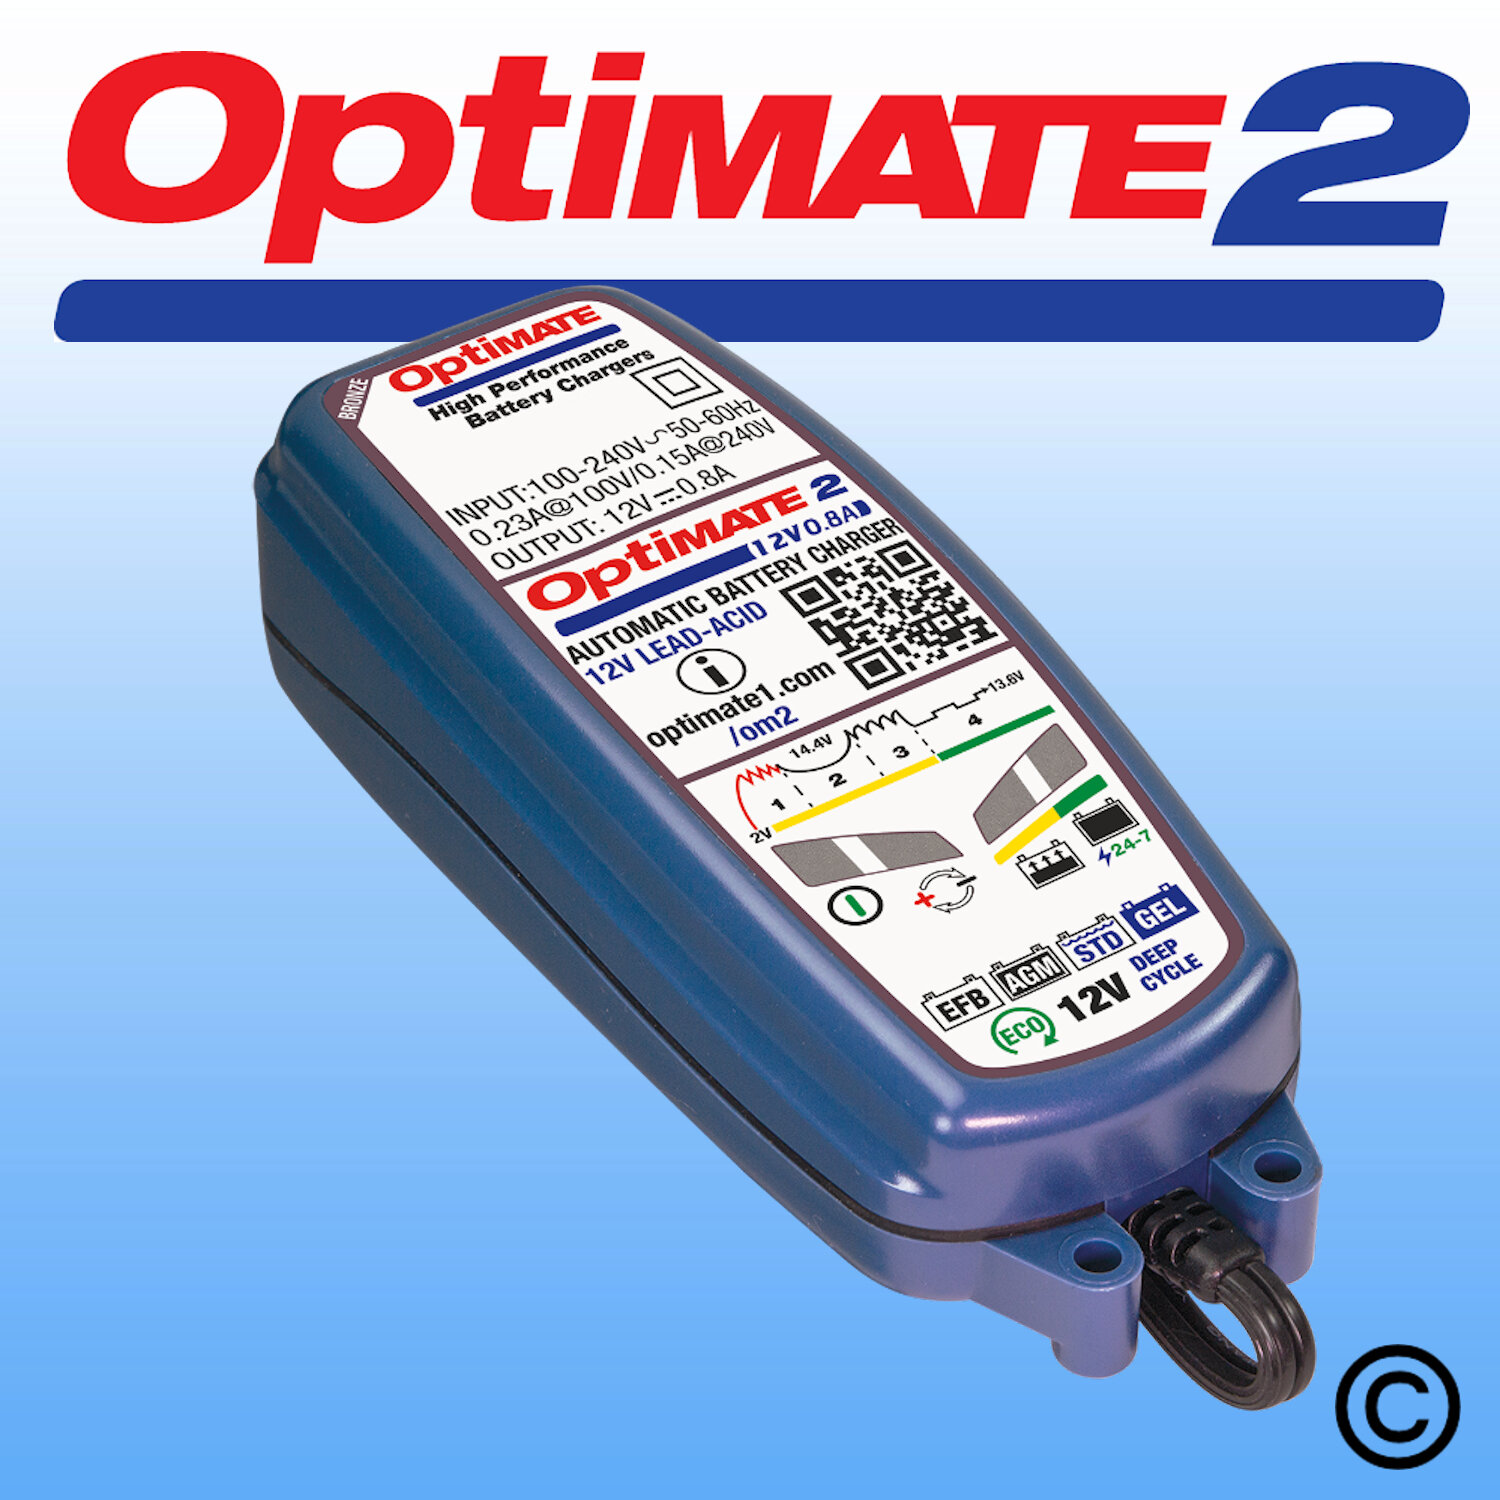 OptiMate 2 — OptiMate UK